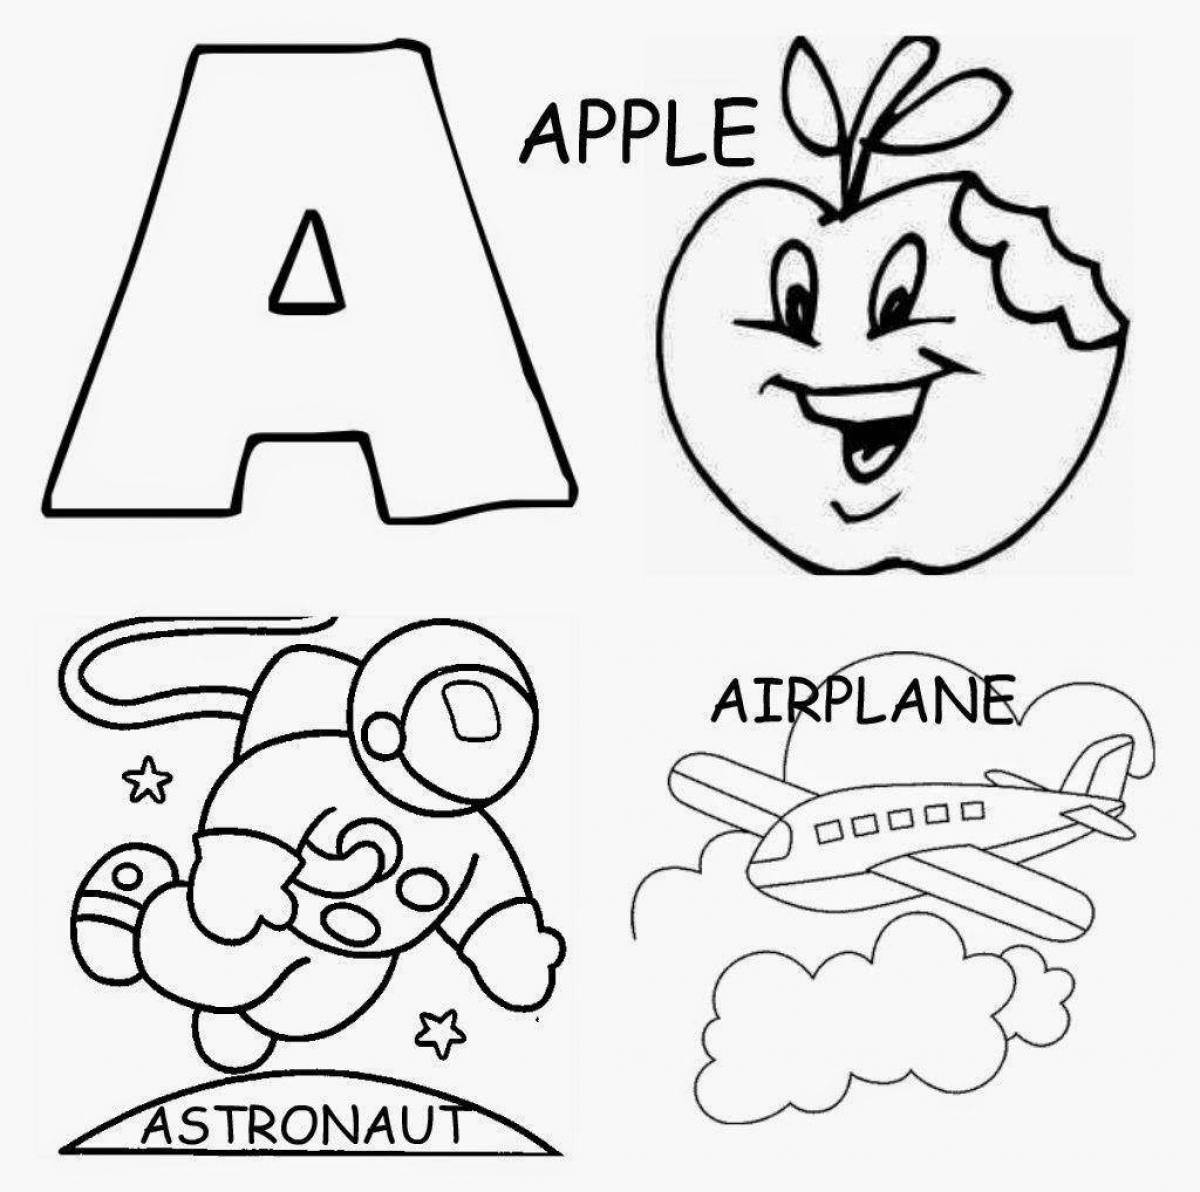 Coloring book adorable alphabet loris